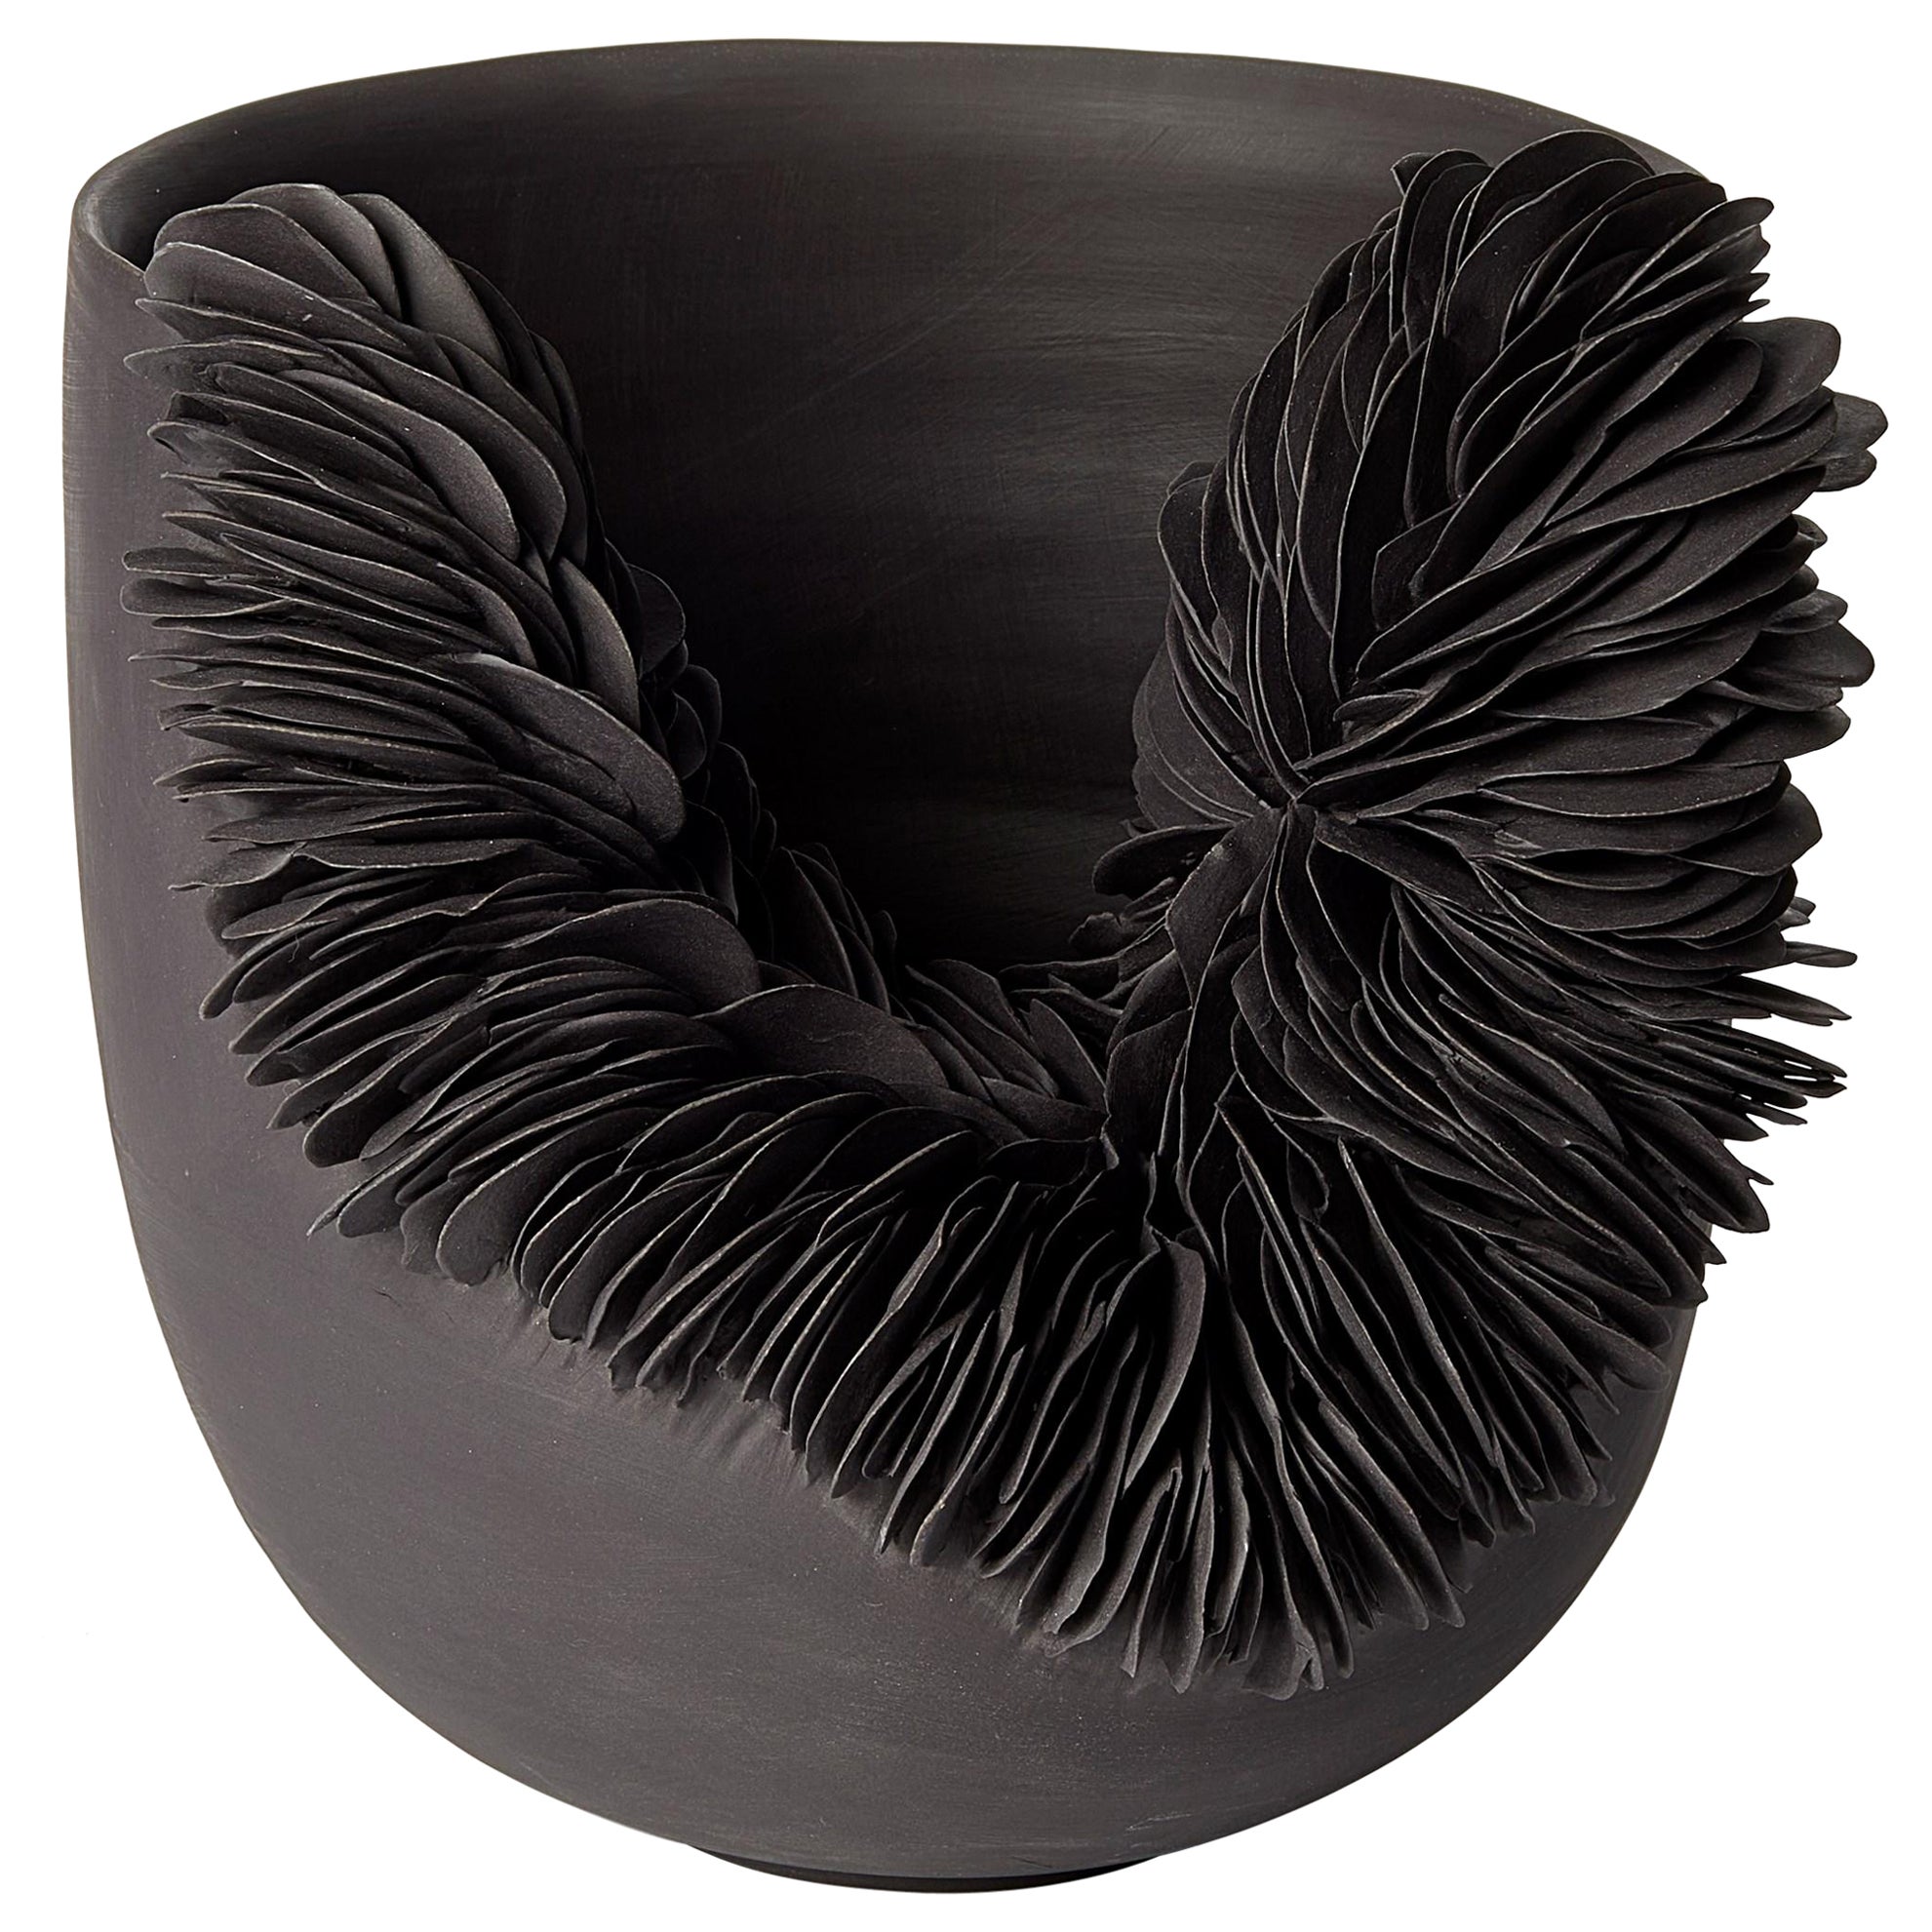 Black Collapsed Bowl, textured porcelain sculptural vessel by Olivia Walker For Sale